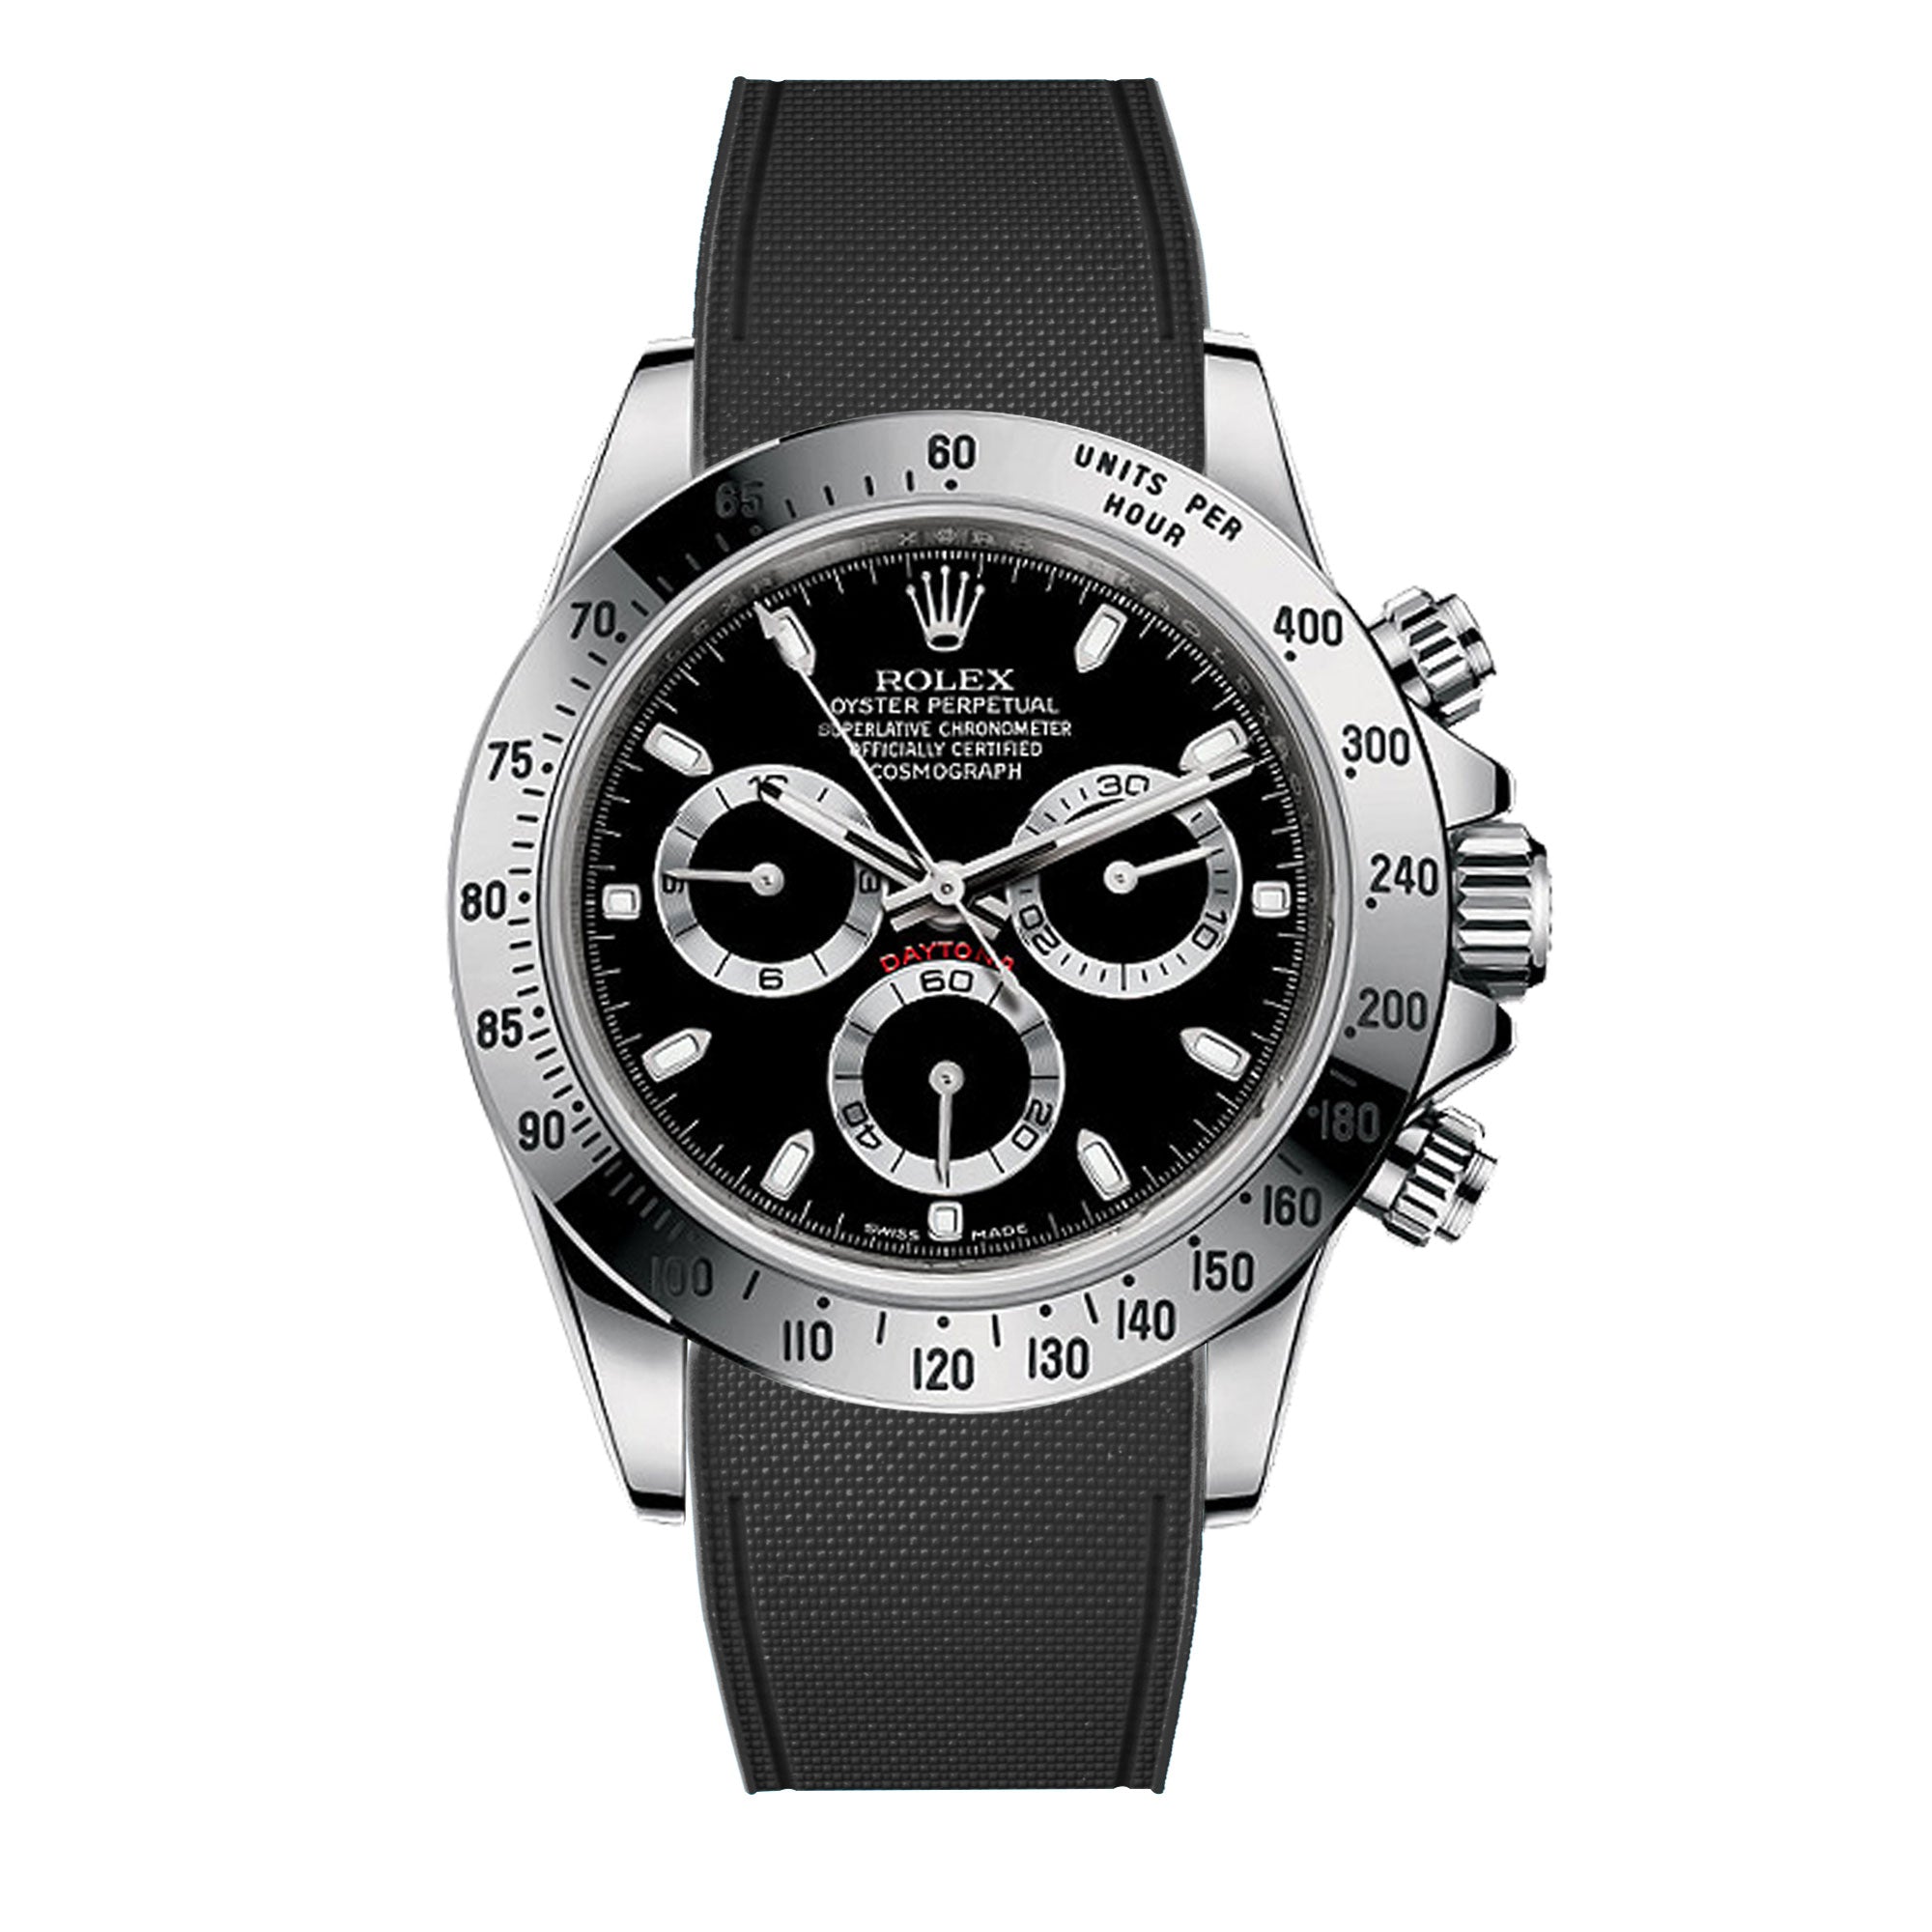 R rubber watch band for Rolex Daytona & bracelet – ABP Concept